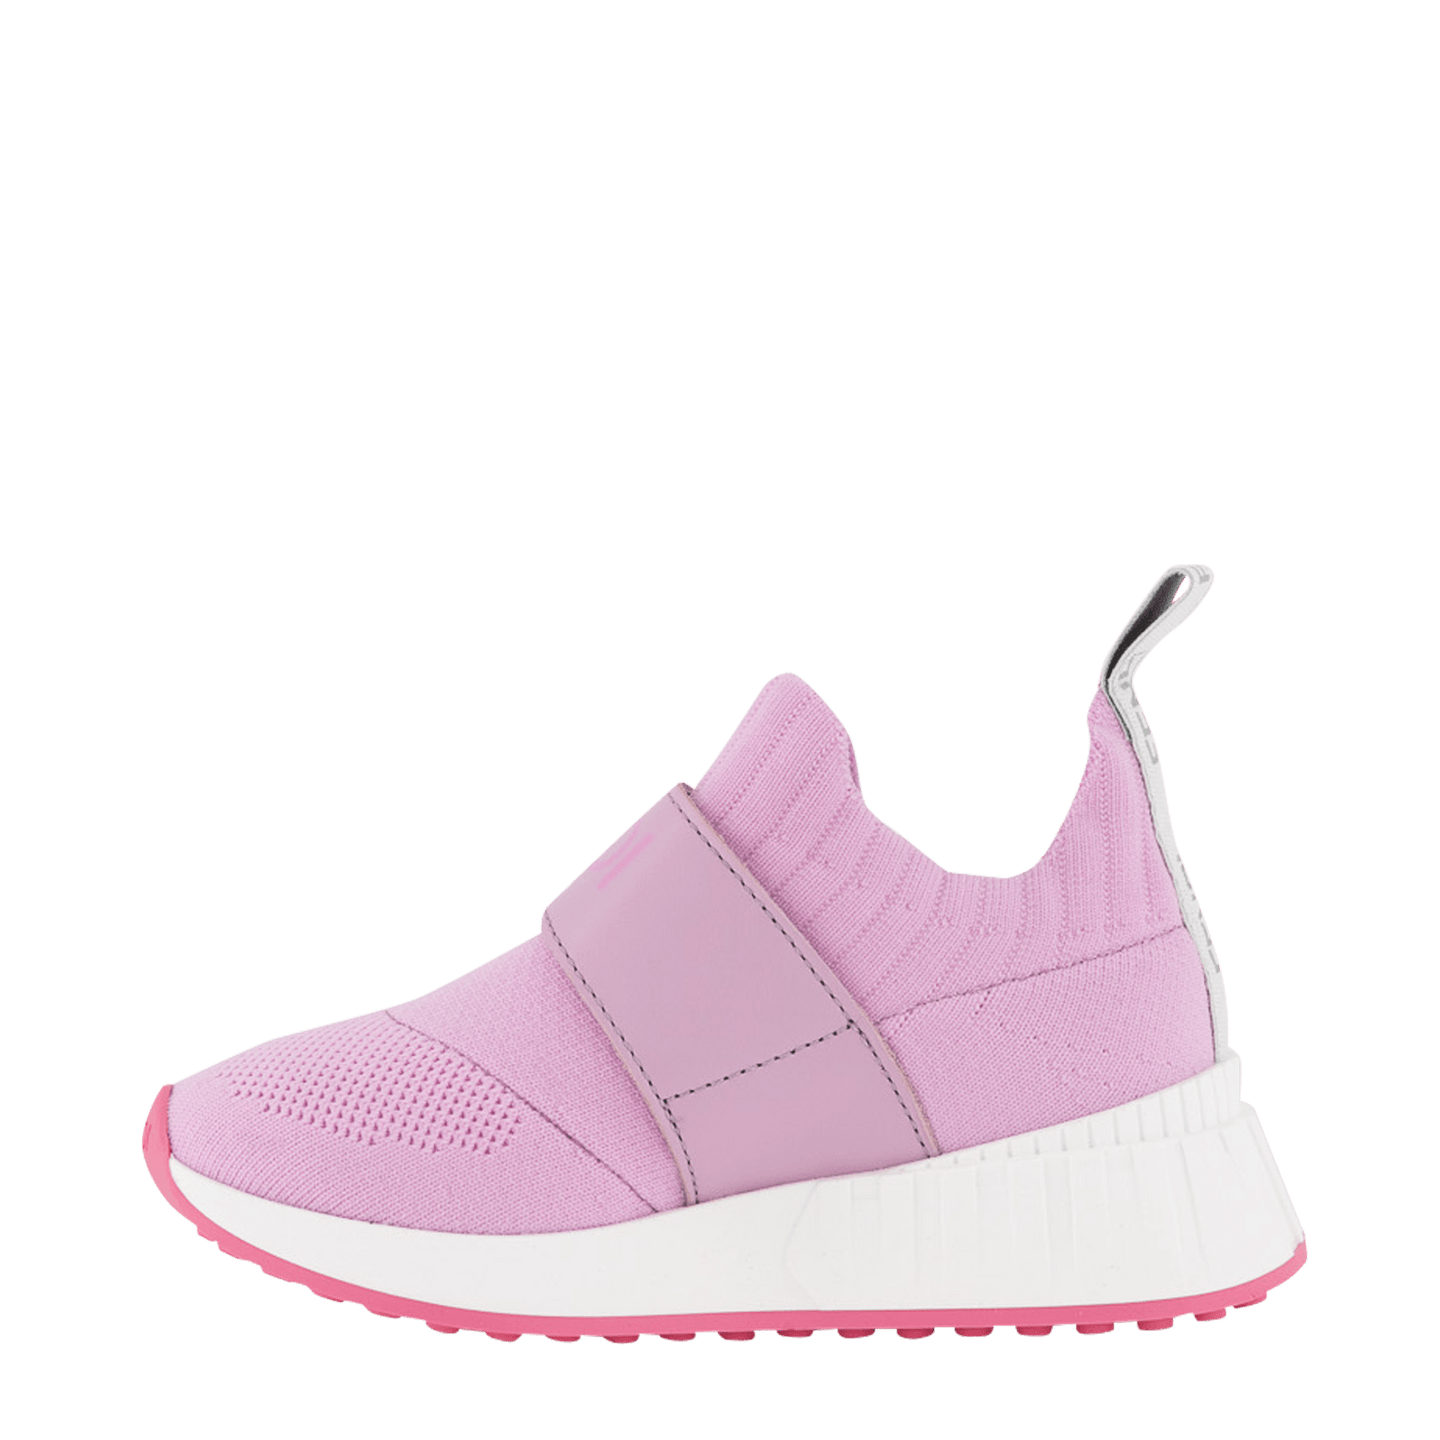 Fendi Kinder Meisjes Sneakers Roze 24